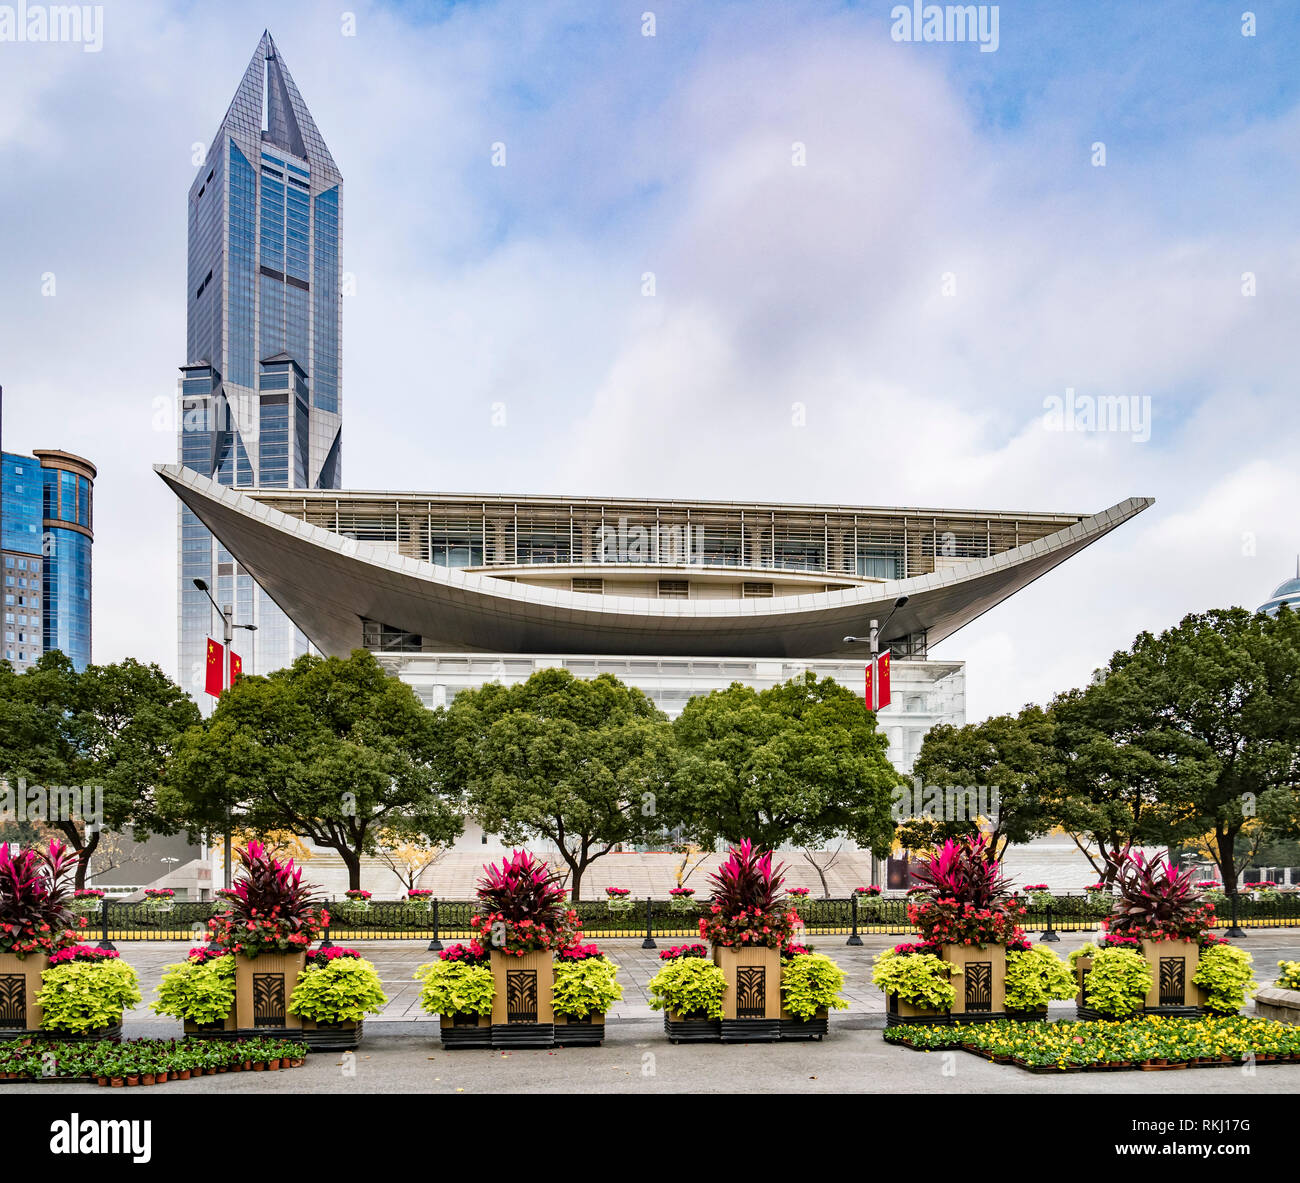 El 2 de diciembre de 2018: Shanghai, China - El Shanghai Urban Planning Exhibition Centre desde la Plaza del Pueblo. Foto de stock